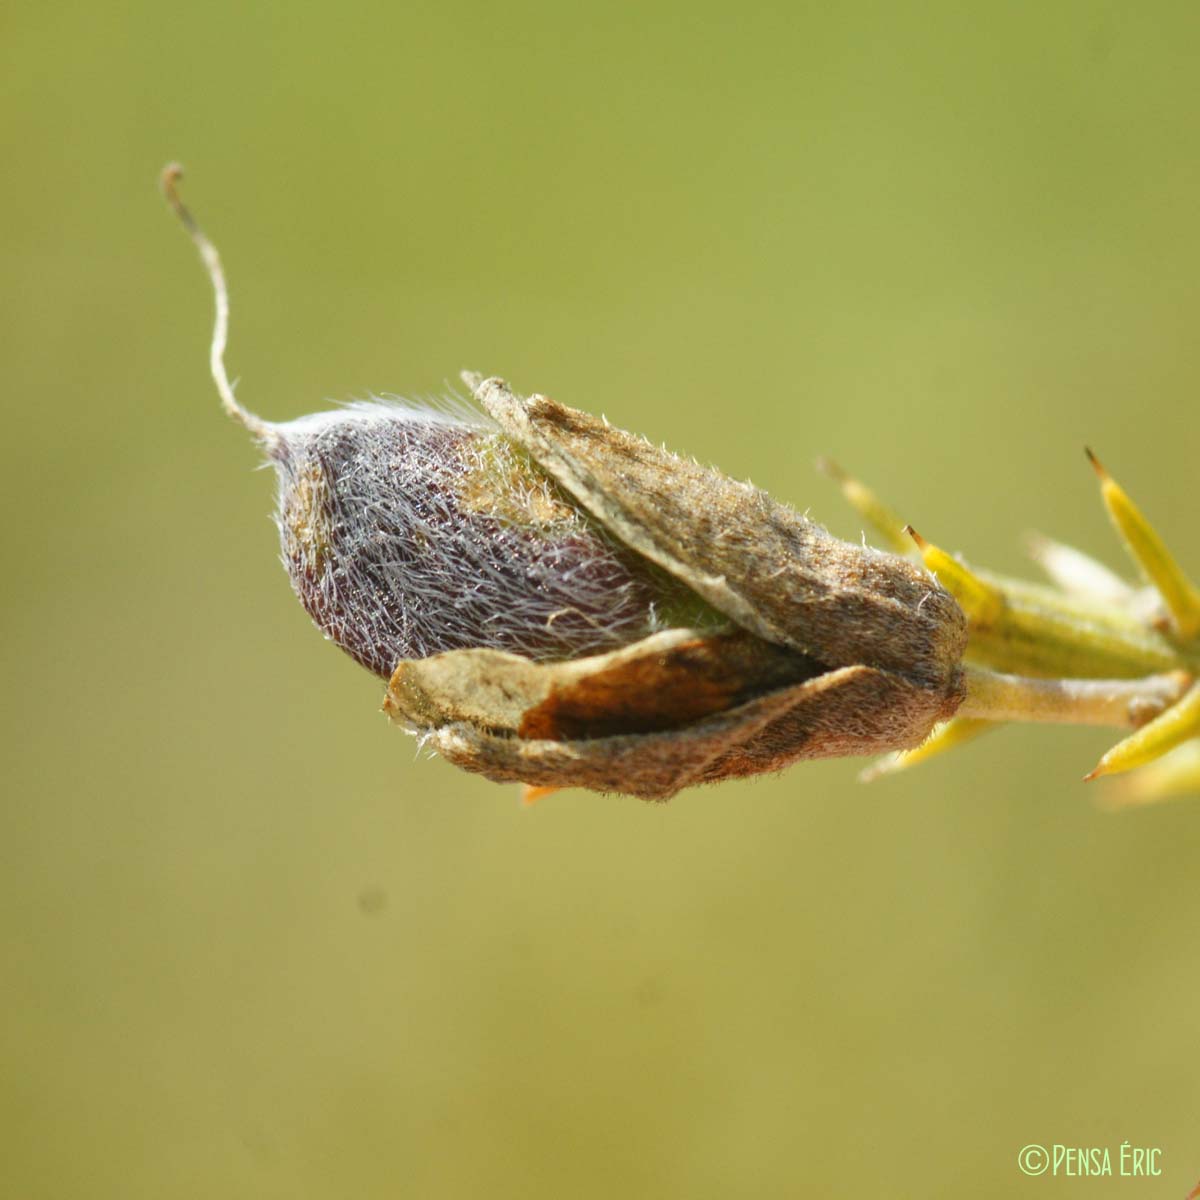 Ajonc de Provence - Ulex parviflorus subsp. parviflorus